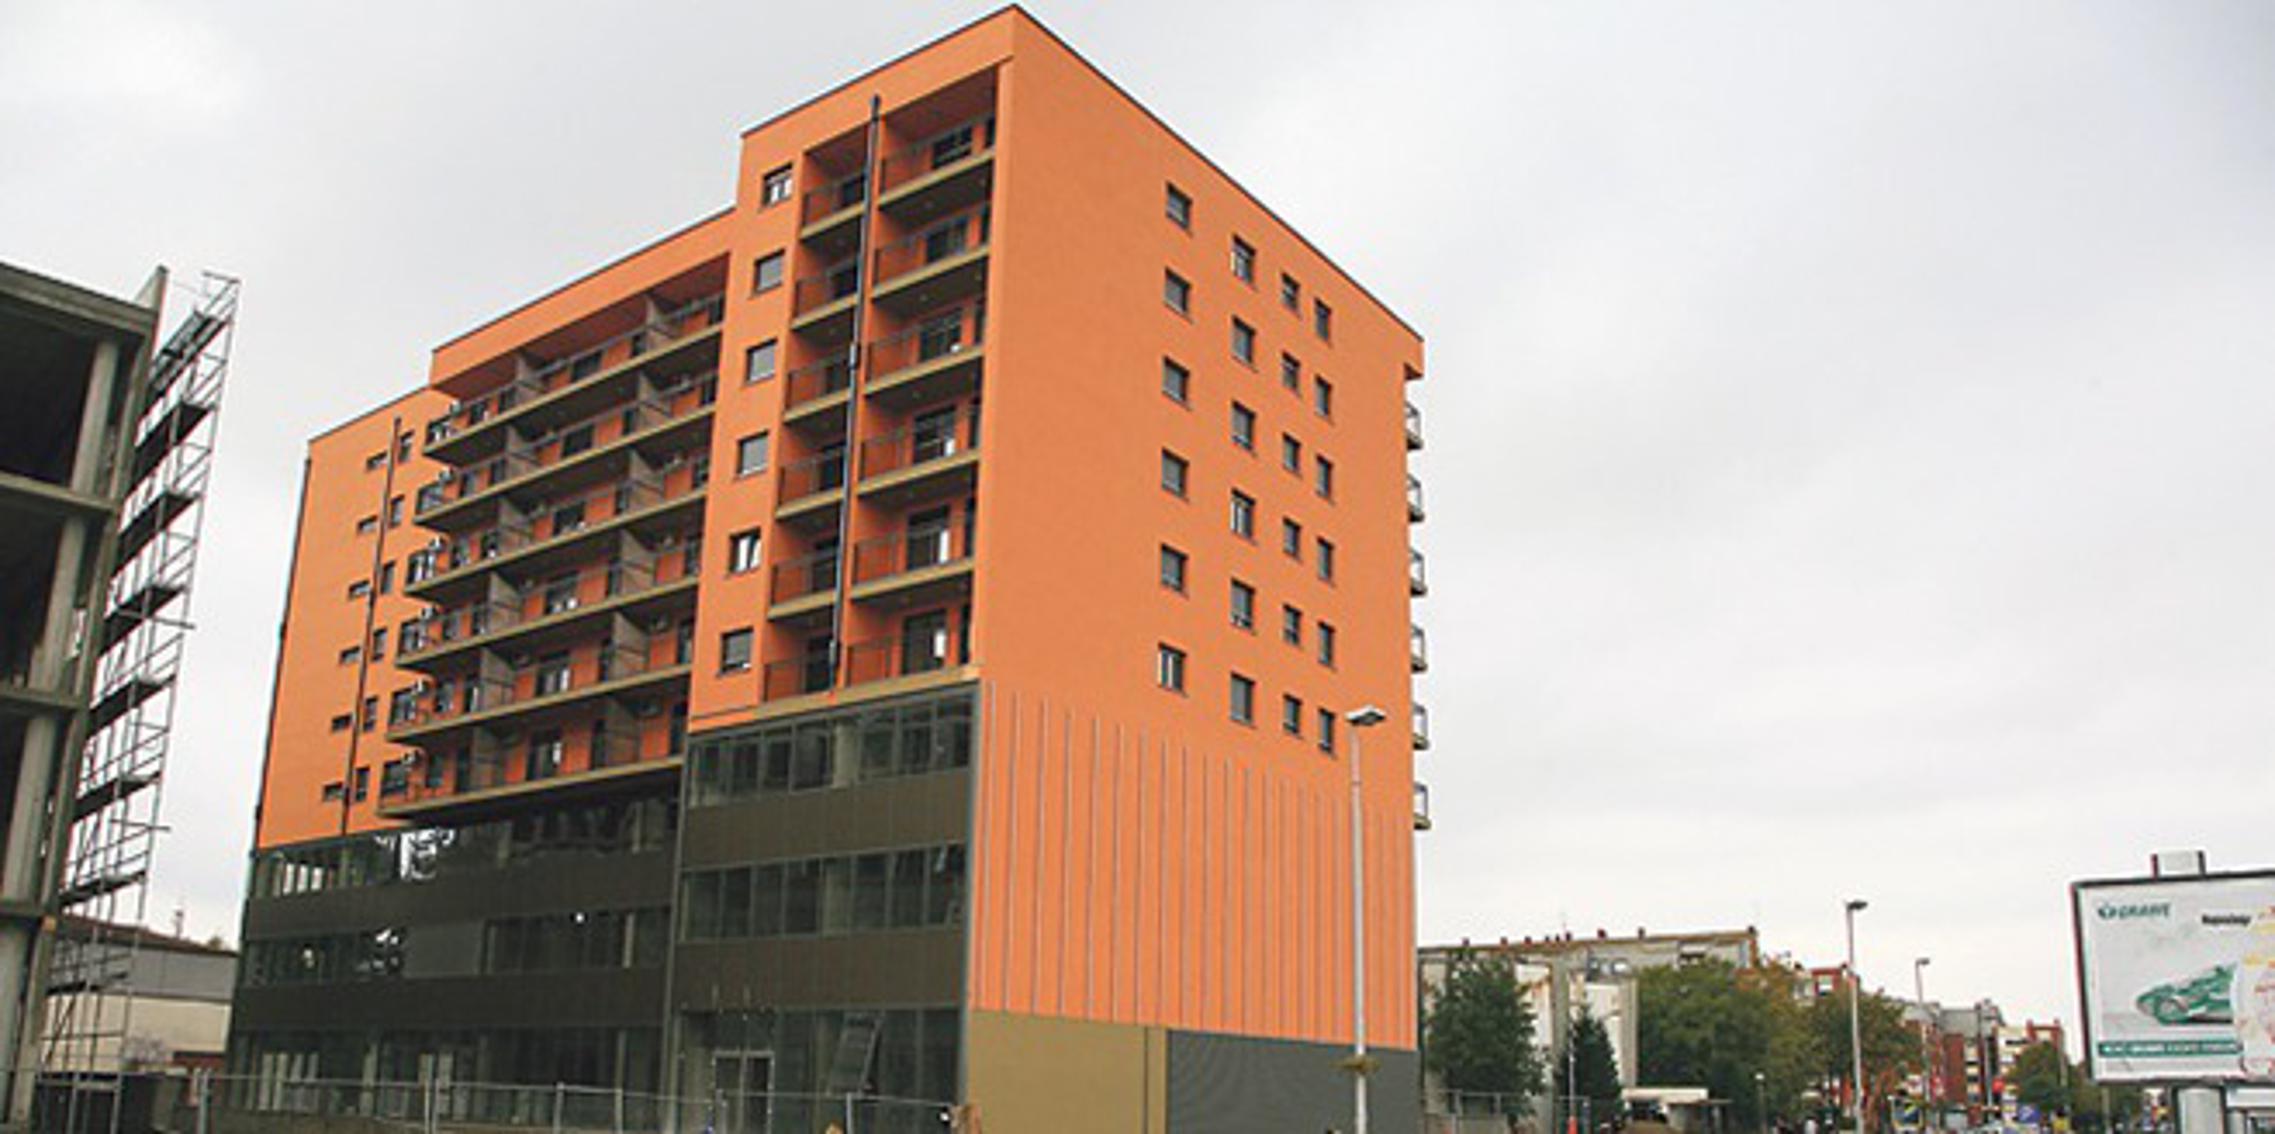 Nova zgrada u kojoj je smještena Porezna uprava Slavonski Brod